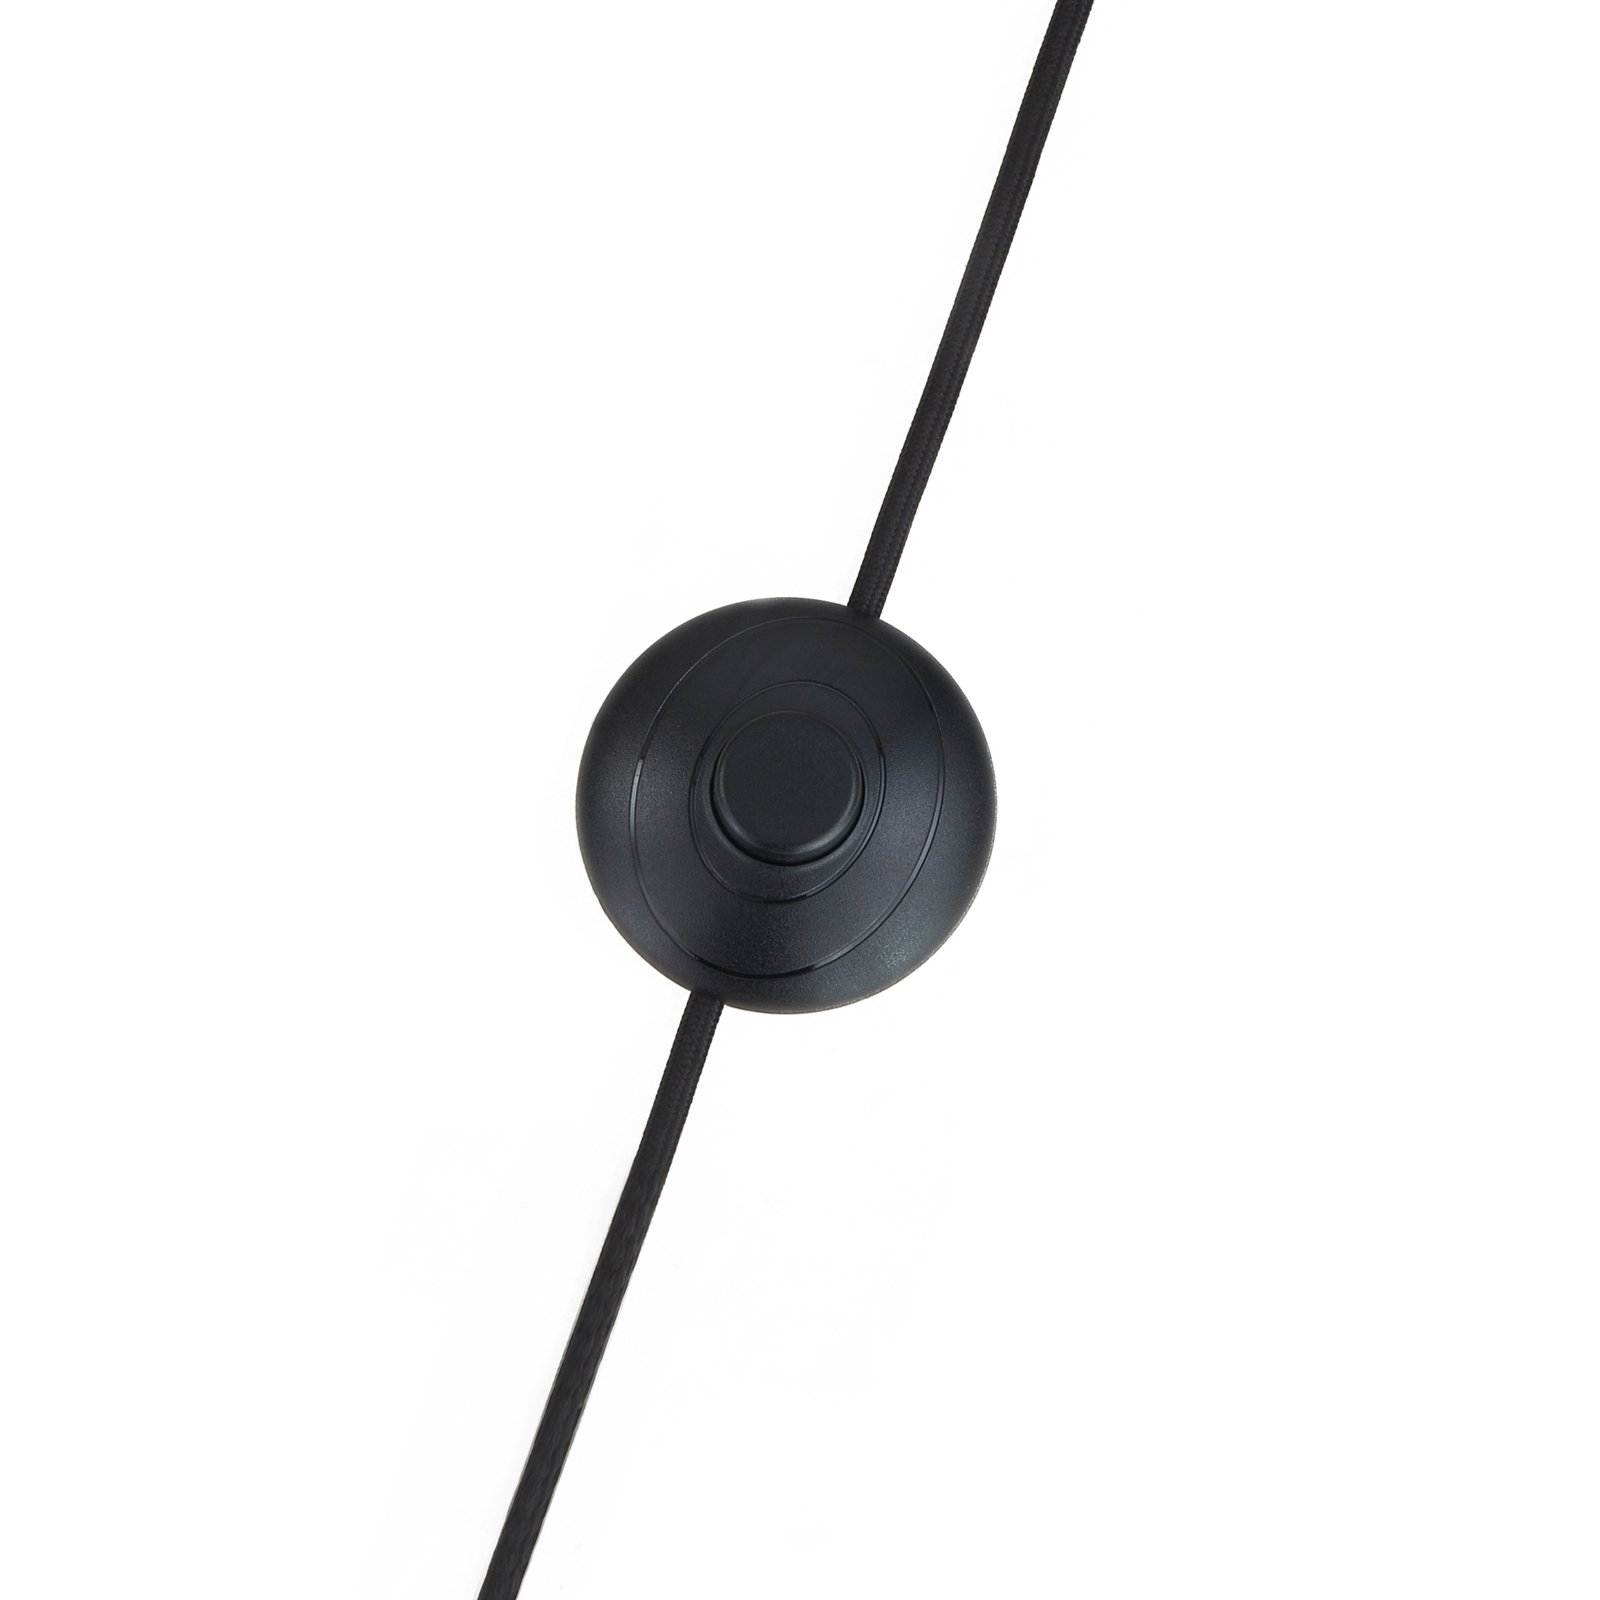 Lindby Krish stojací lampa, tvar klece, černá